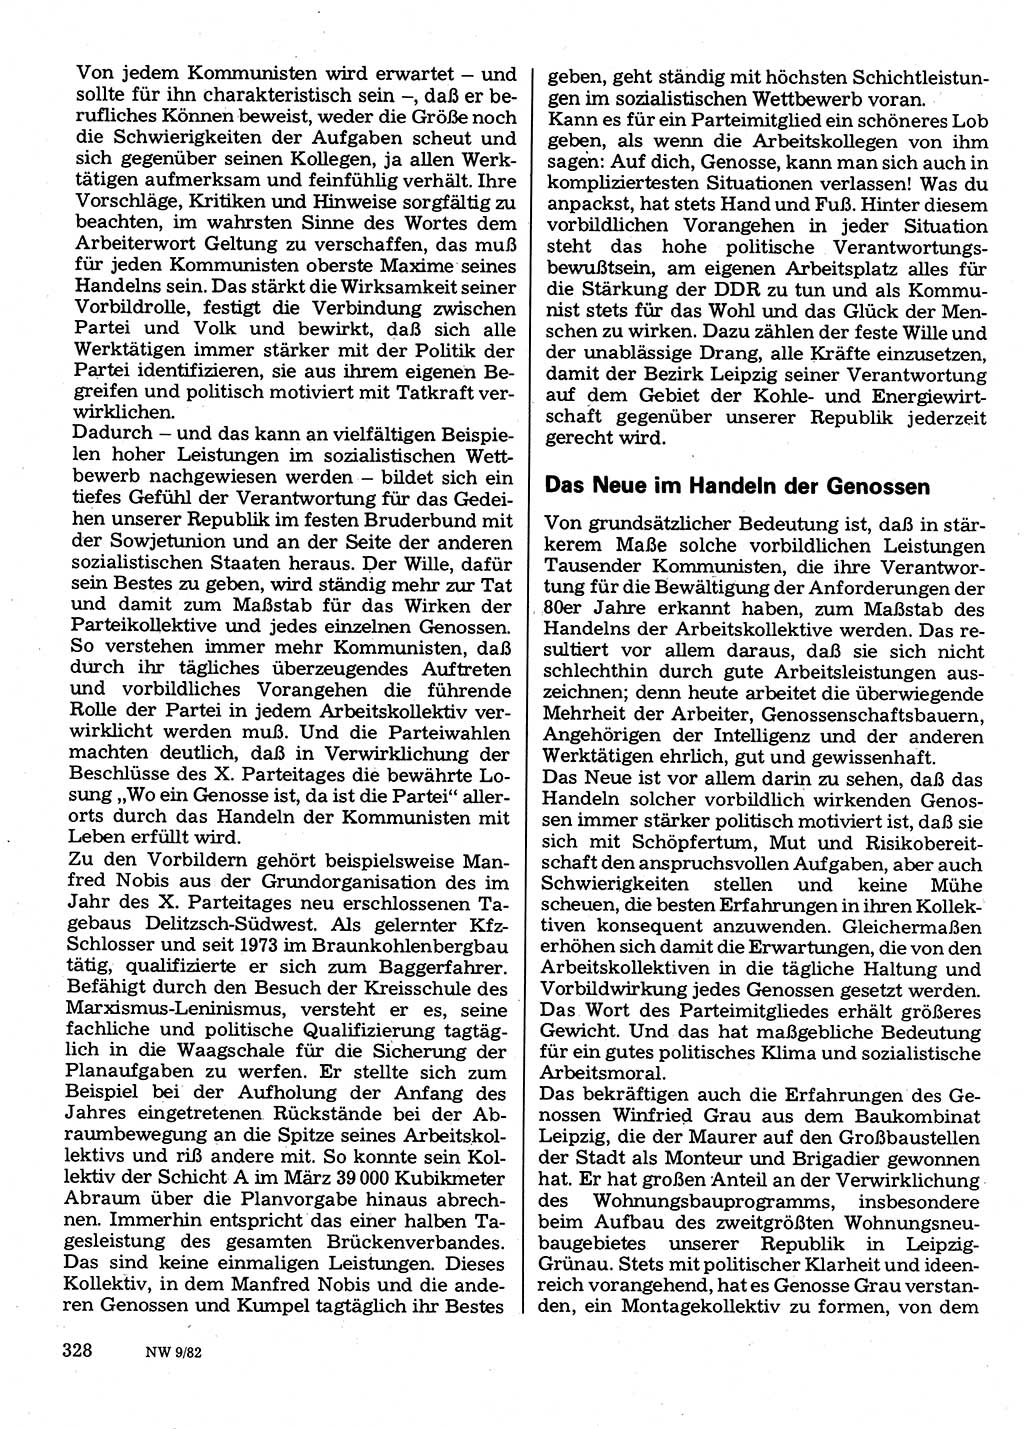 Neuer Weg (NW), Organ des Zentralkomitees (ZK) der SED (Sozialistische Einheitspartei Deutschlands) für Fragen des Parteilebens, 37. Jahrgang [Deutsche Demokratische Republik (DDR)] 1982, Seite 328 (NW ZK SED DDR 1982, S. 328)